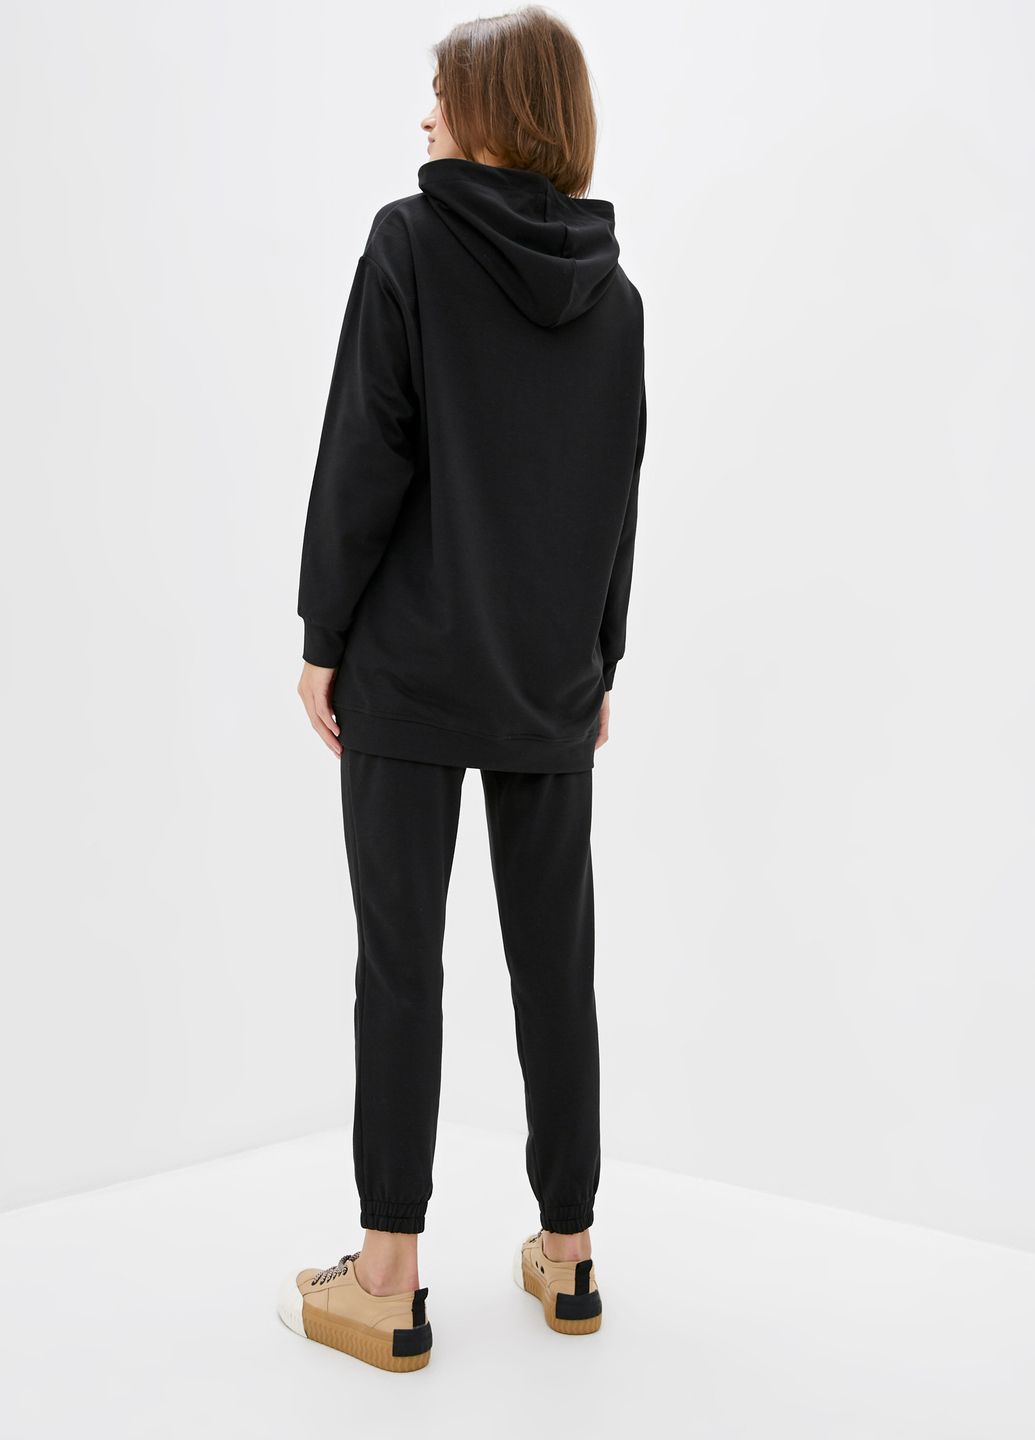 Купить Спортивные штаны женские Merlini Латина 600000014 - Черный, 42-44 в интернет-магазине